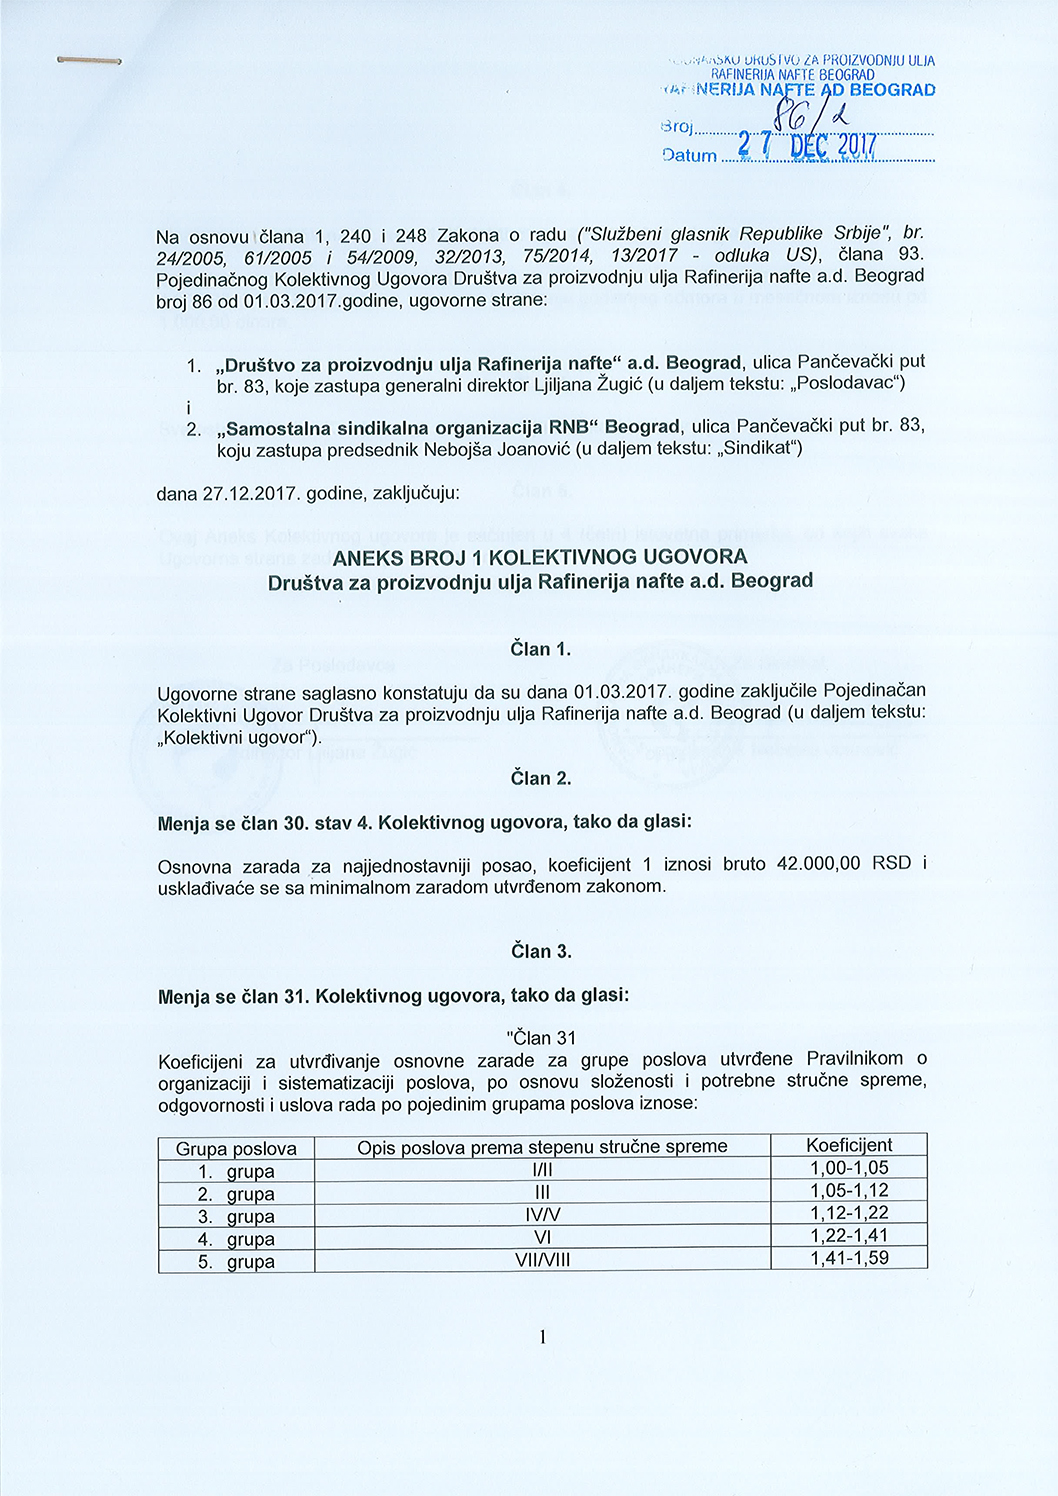 Aneks broj 1 Kolektivnog ugovora Društva za proizvodnju ulja Rafinerija nafte a.d. Beograd